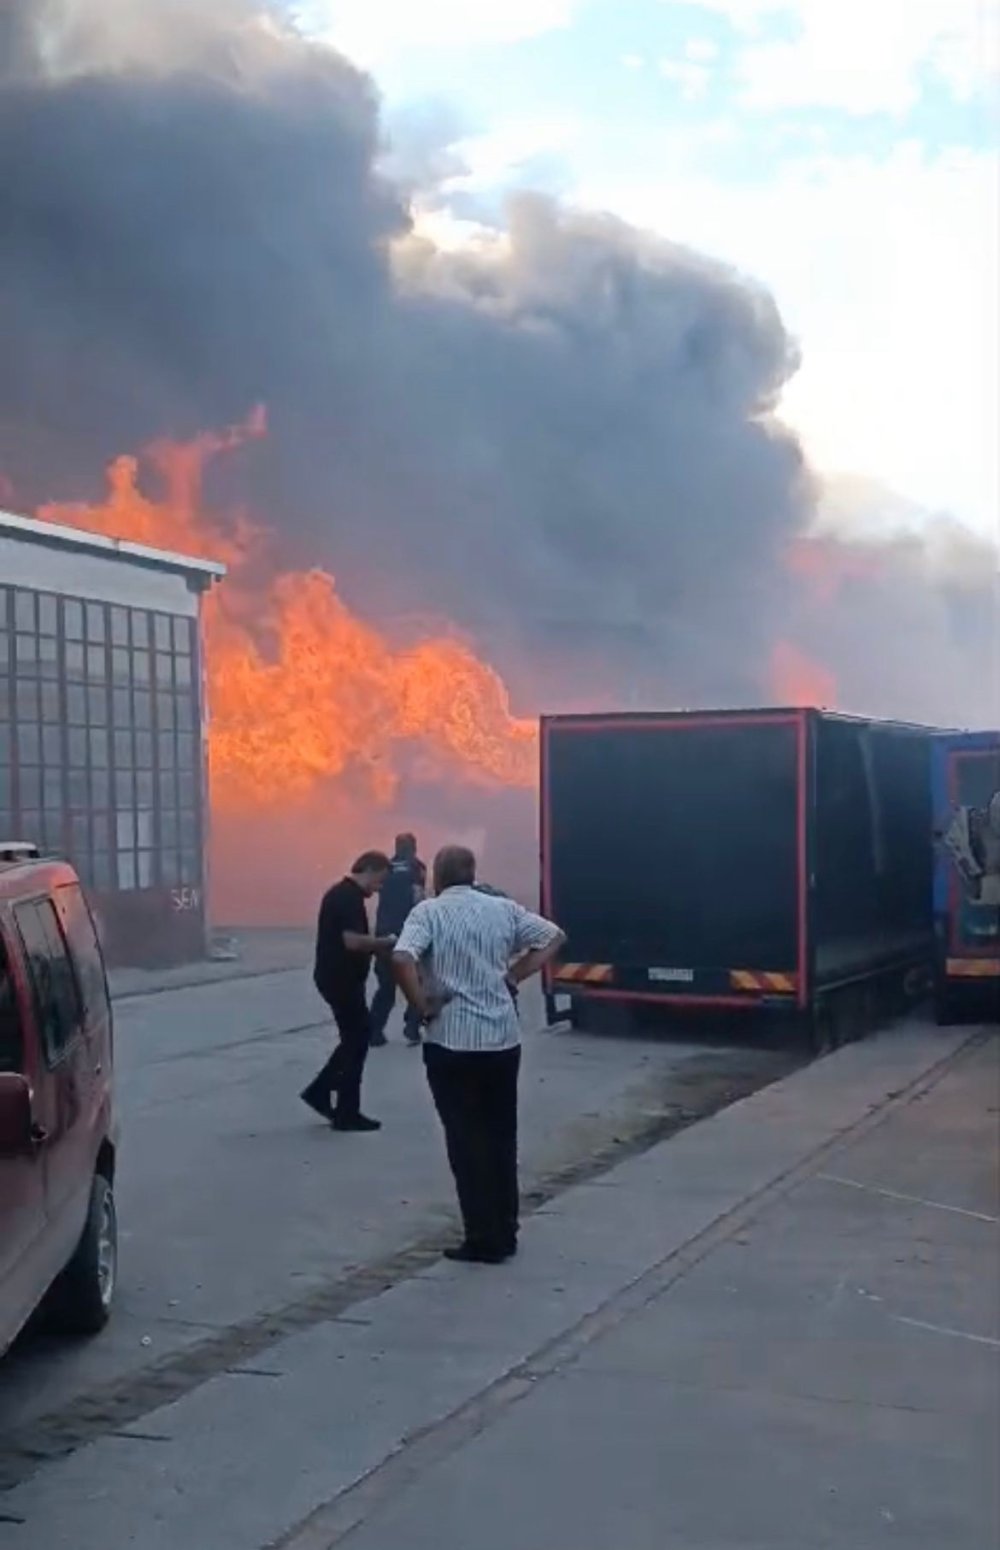 Bursa'daki kereste fabrikasında yangın çıktı!